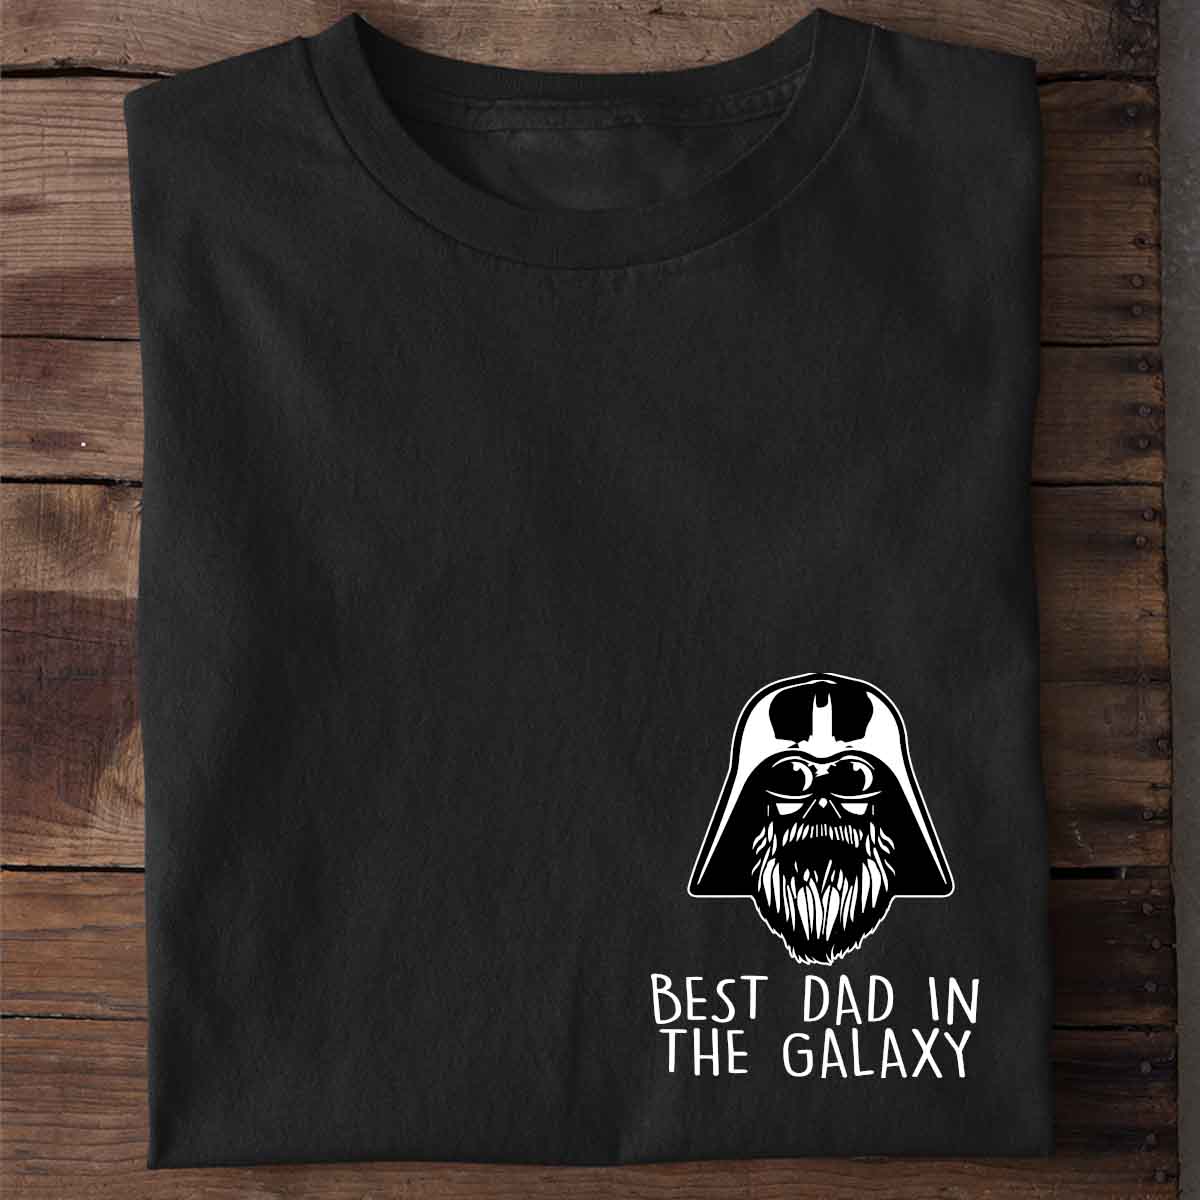 Best Dad - Shirt Unisex Chest